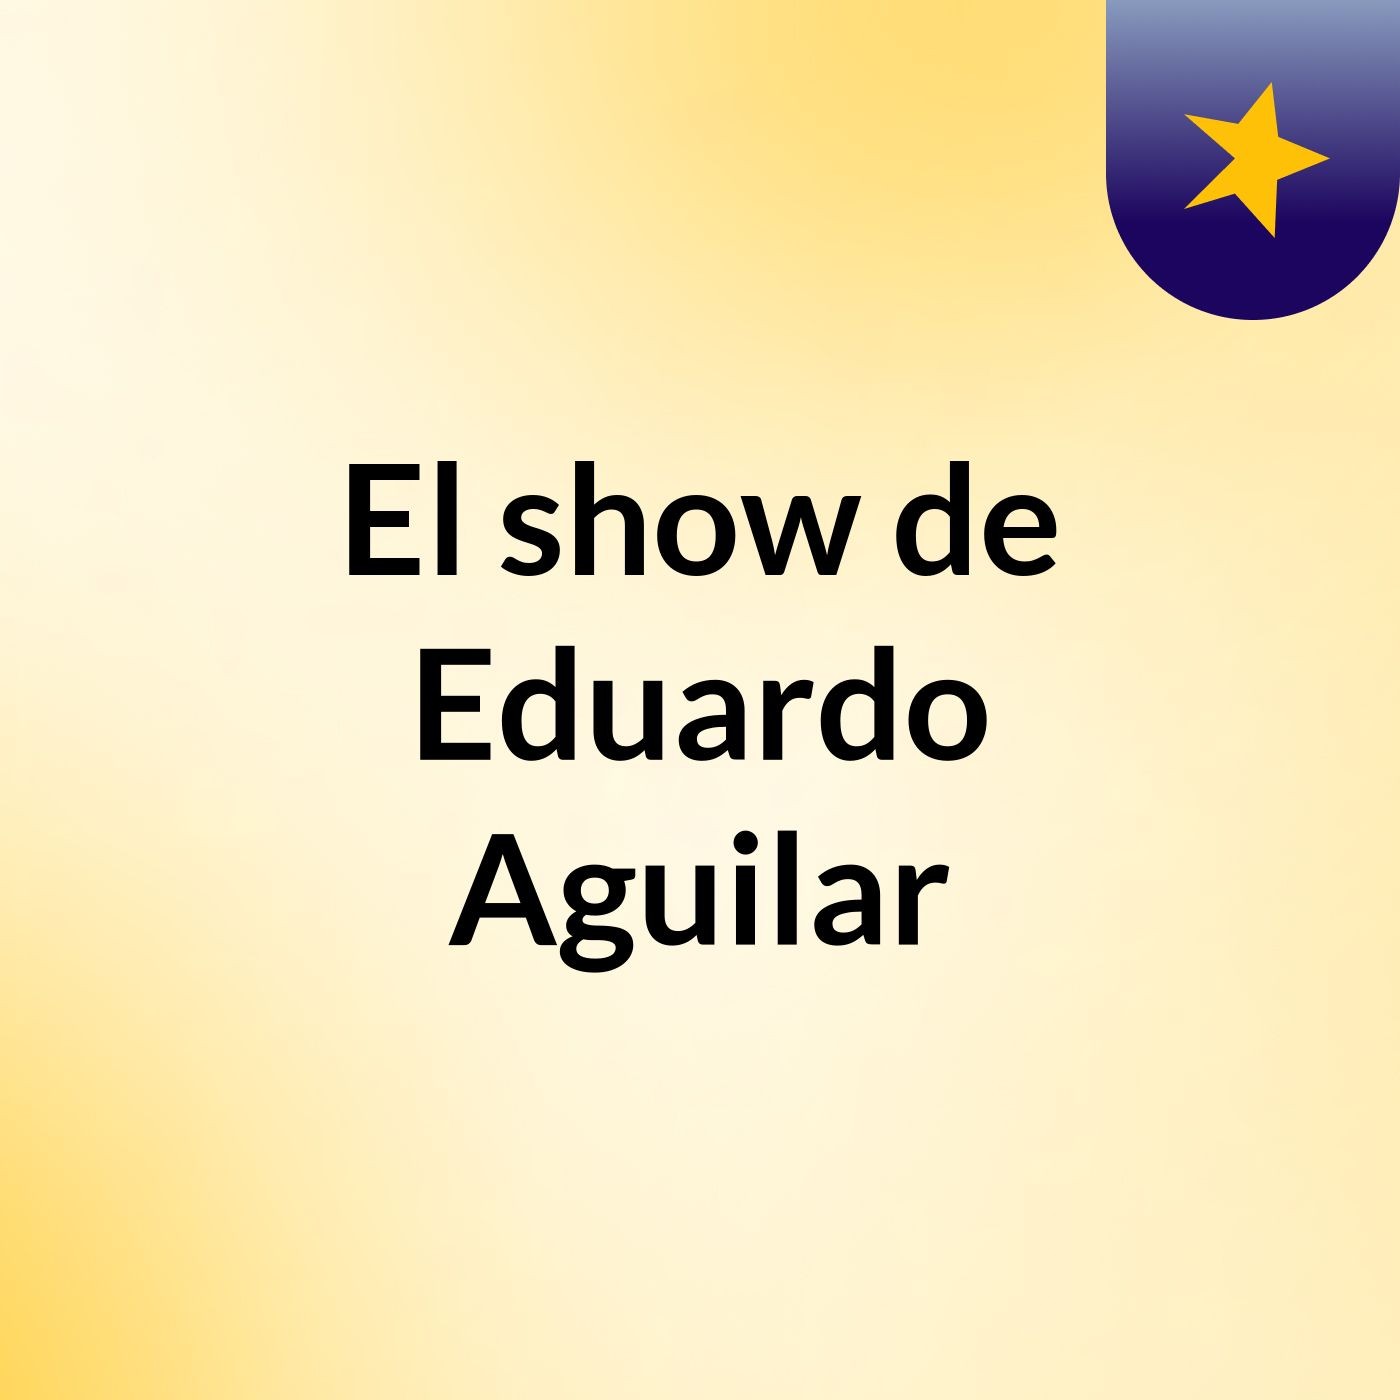 El show de Eduardo Aguilar